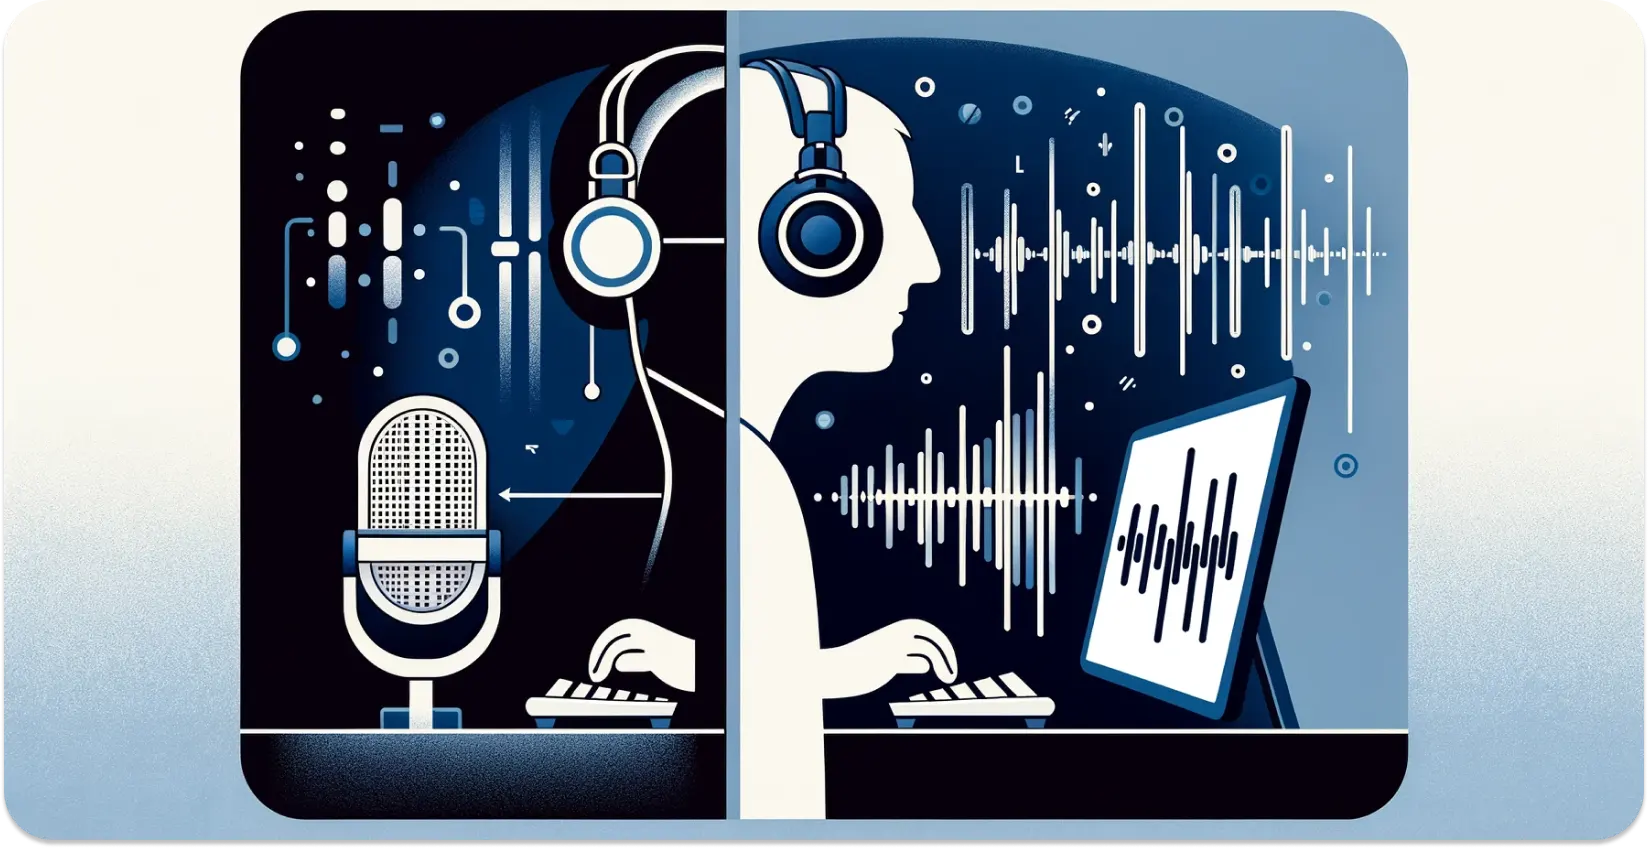 Stiliseret skildring af en person med hovedtelefoner, der transskriberer lyd fra en tablet med visuelle lydbølger.